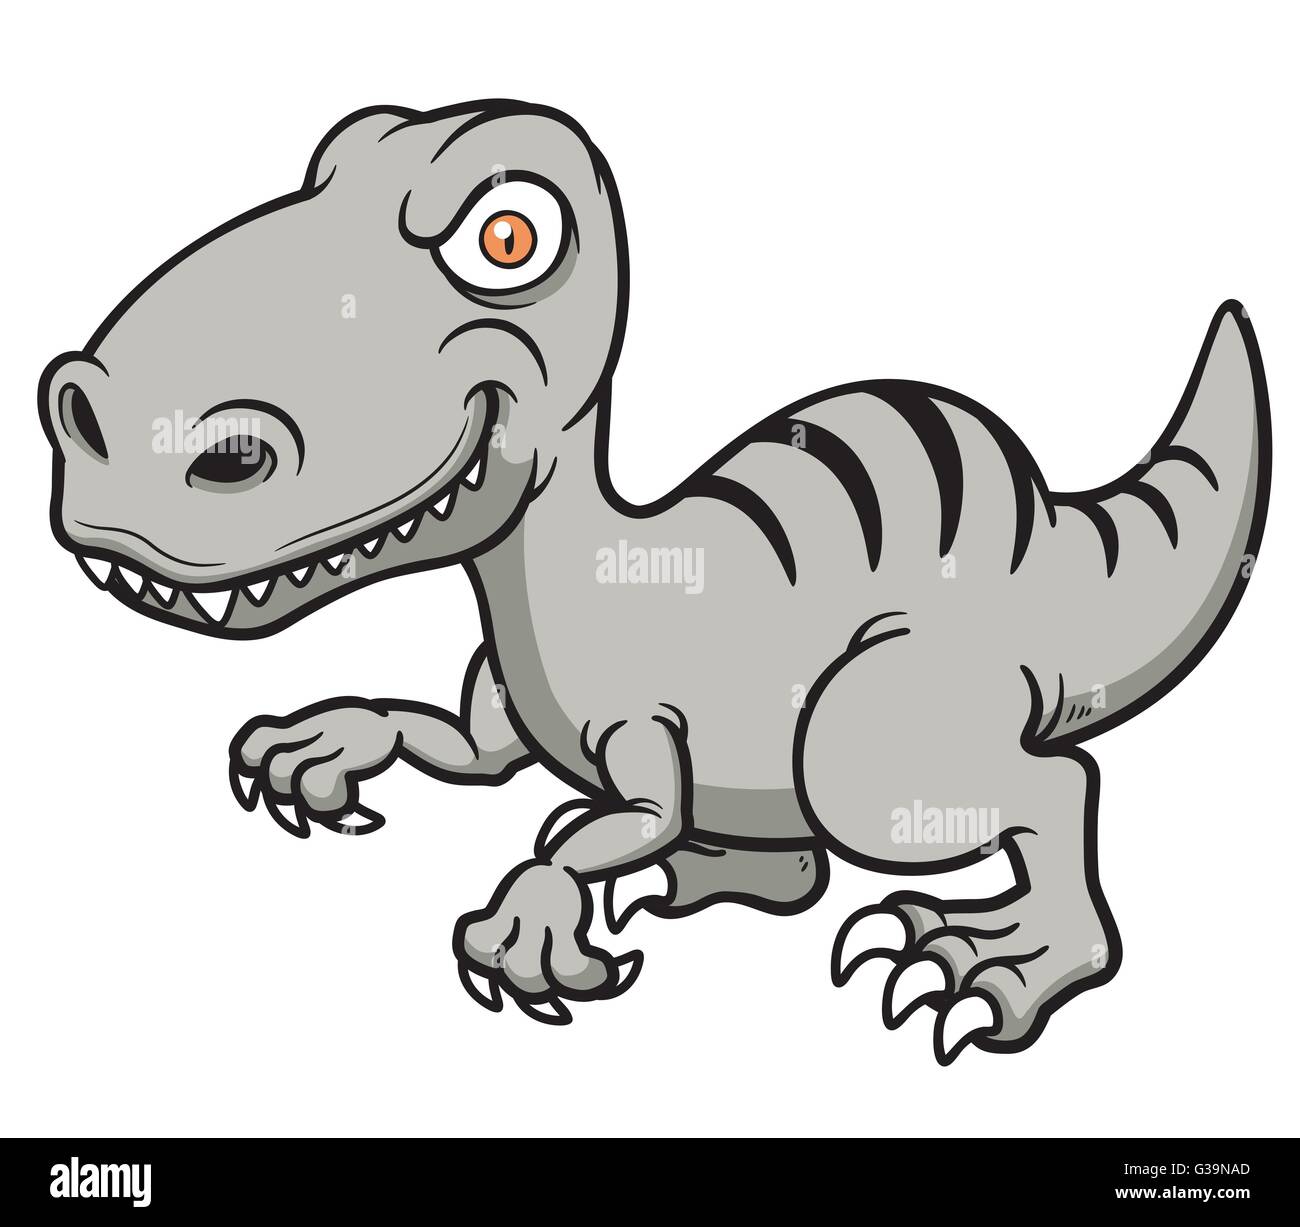 Vector illustration of Cartoon Dinosaur Stock Vector